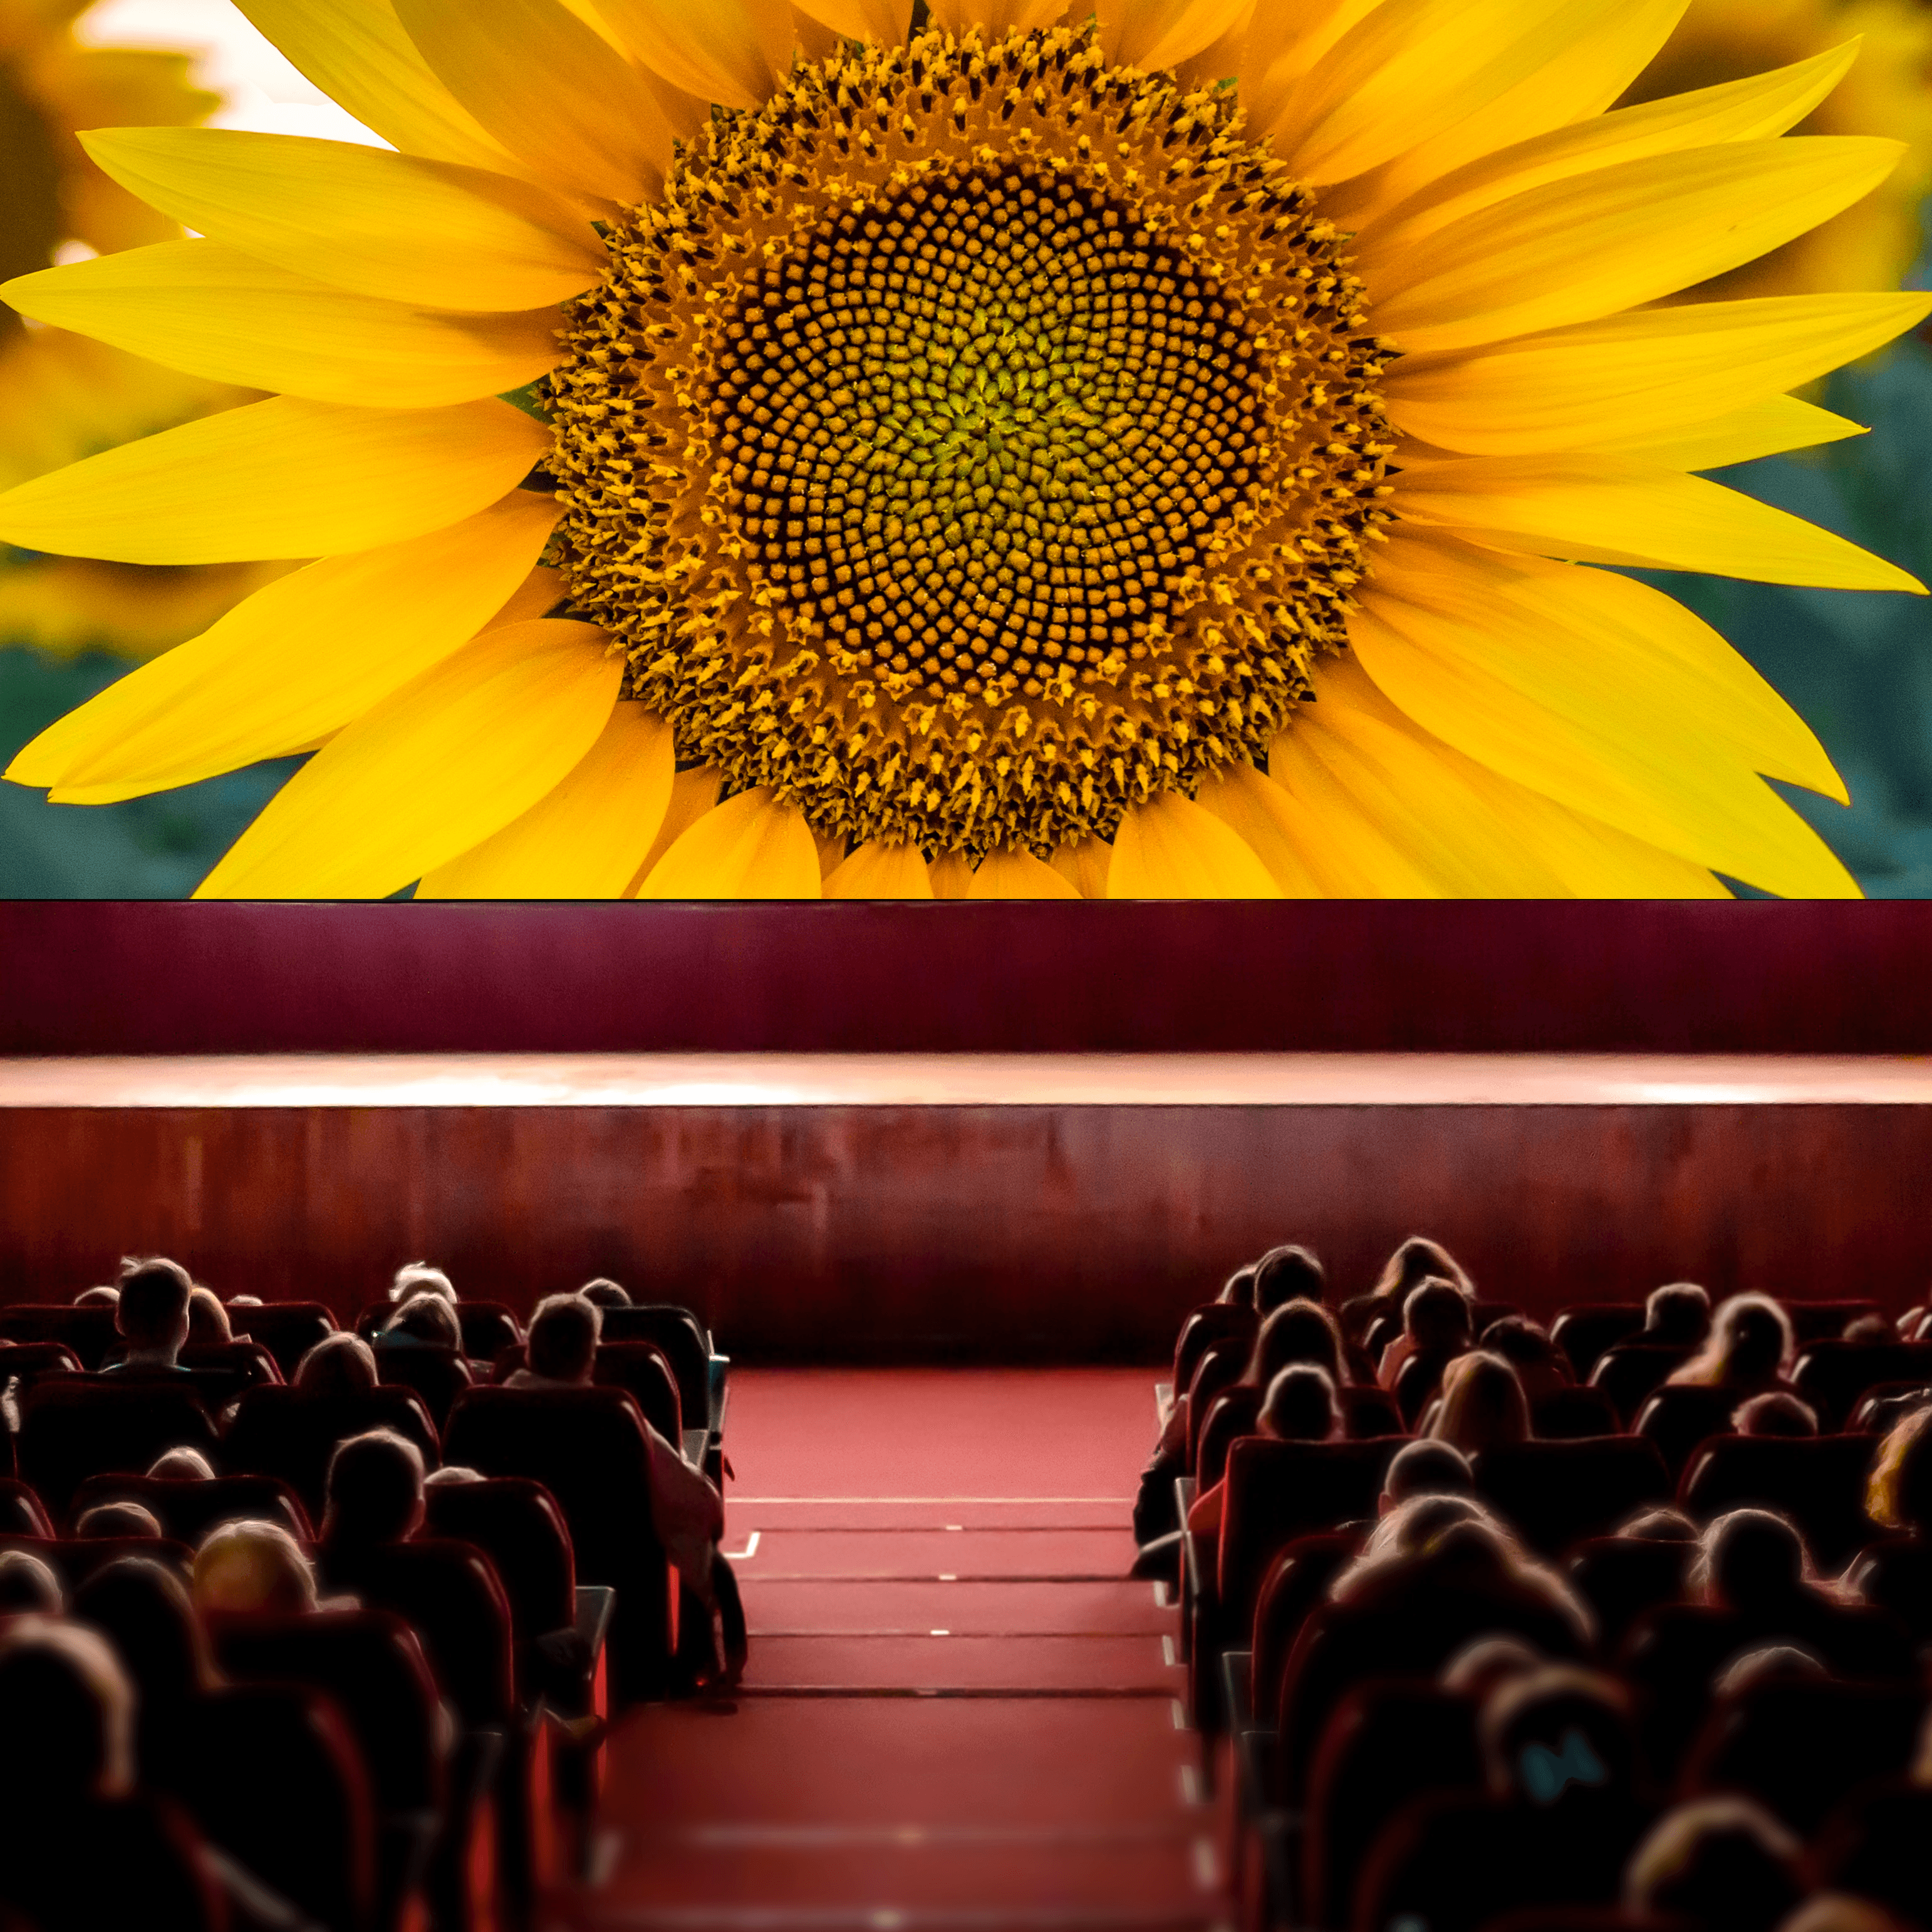 Ein voller Kinosaal, in dem die Menschen auf die Leinwand gucken. Auf der Leinwand ist eine große Sonnenblume zu sehen.